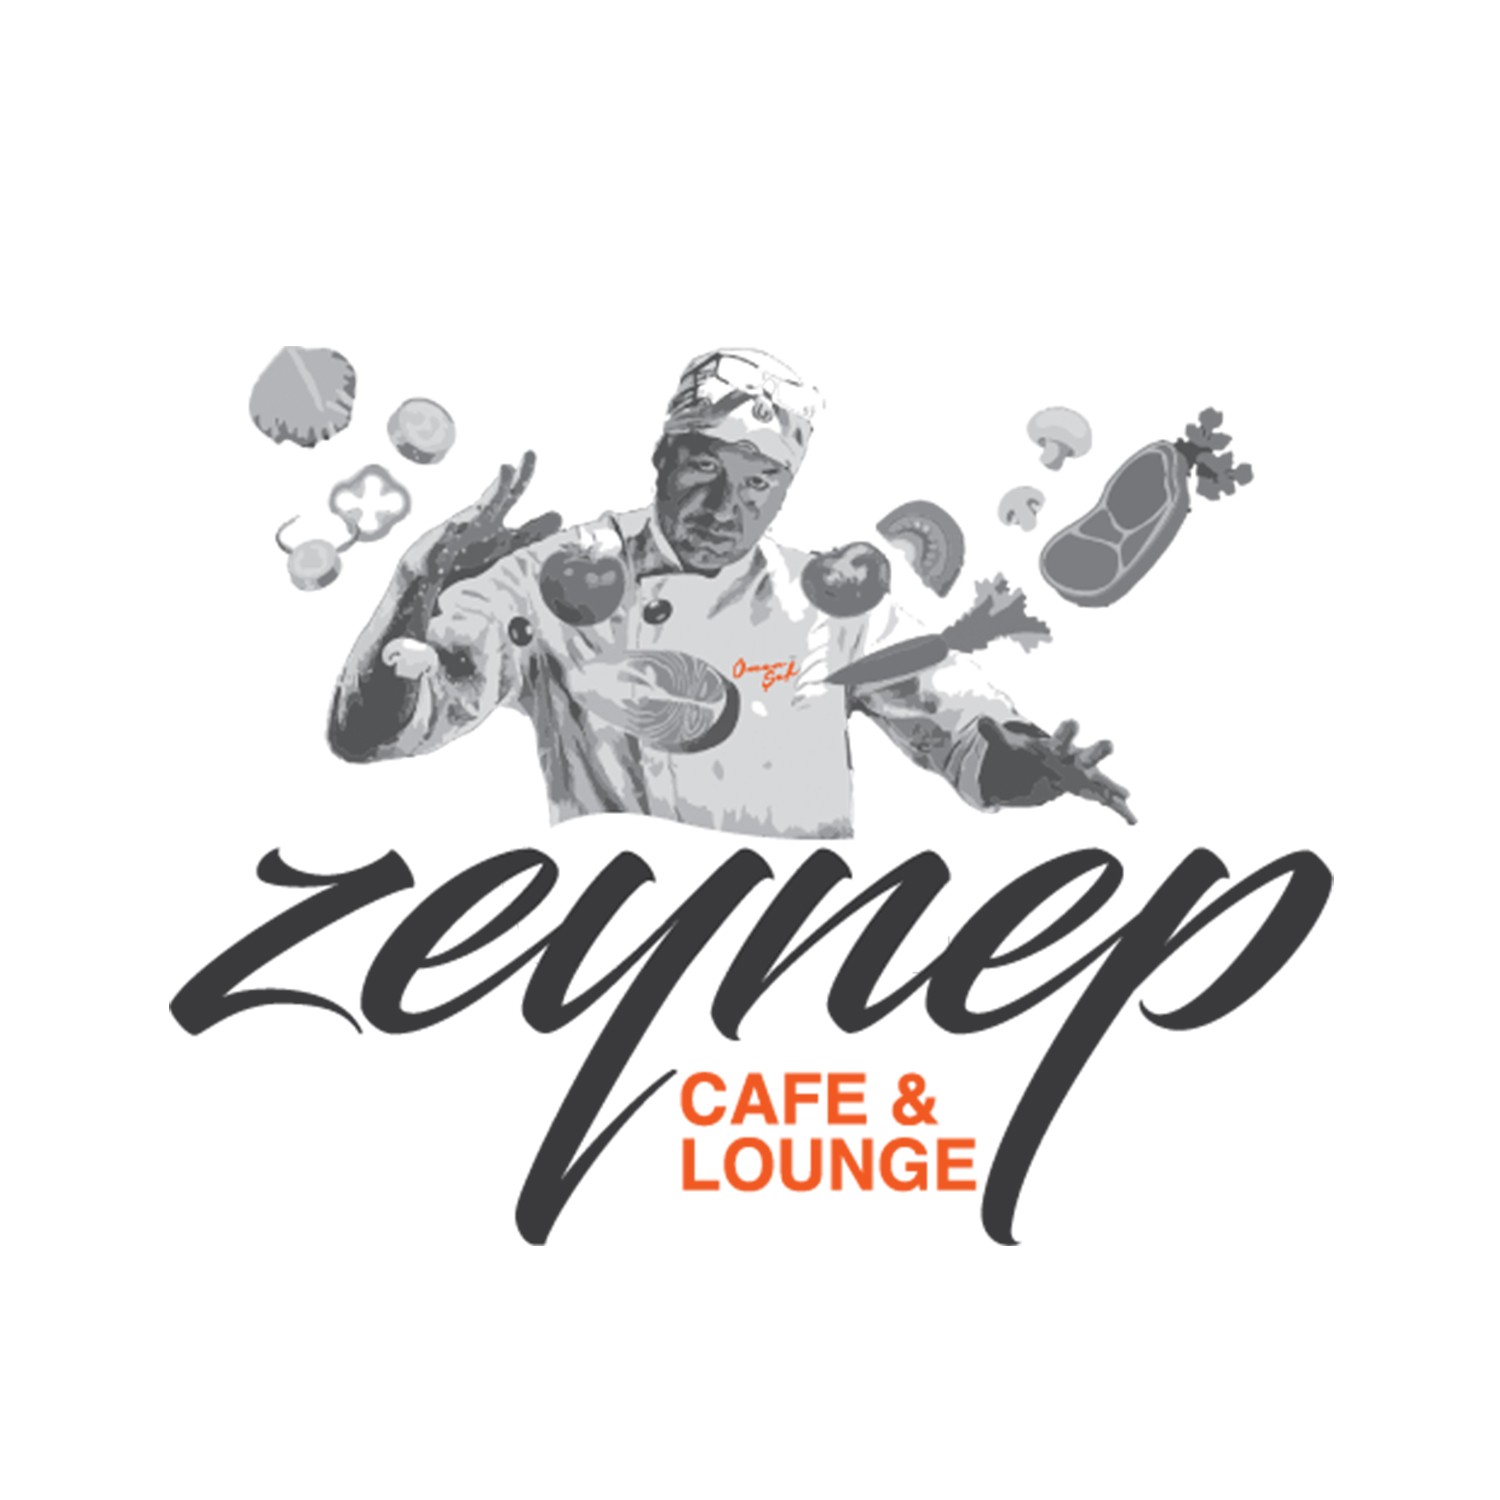 Zeynep cafe lounge logo tasarımı çalışması.